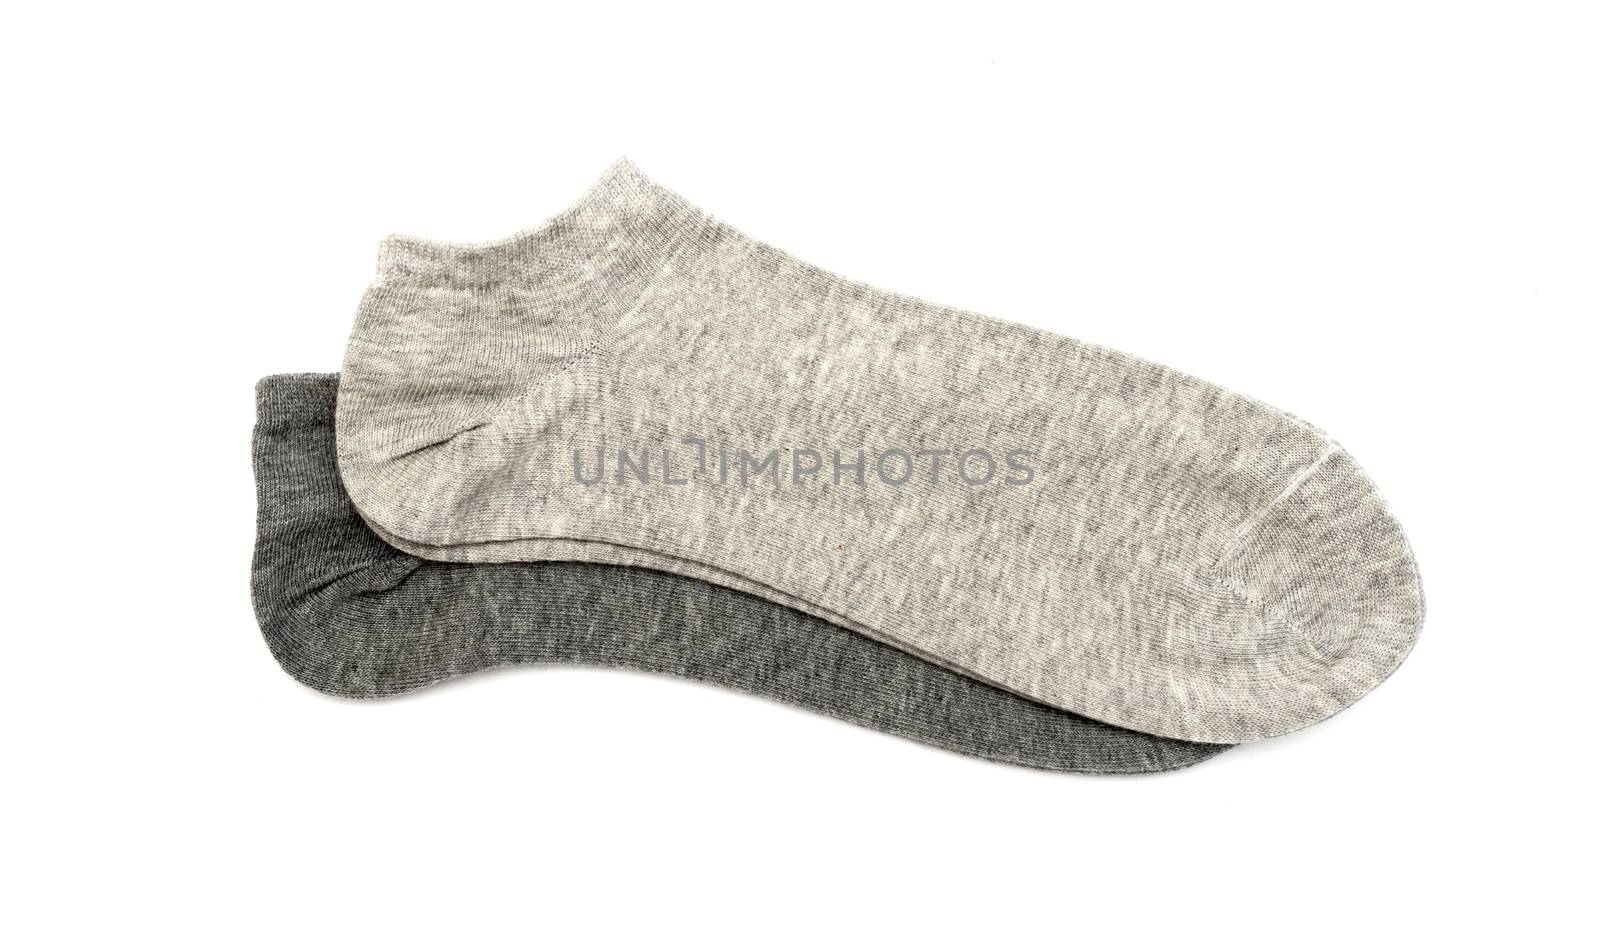 gray men's socks on a white background by DNKSTUDIO